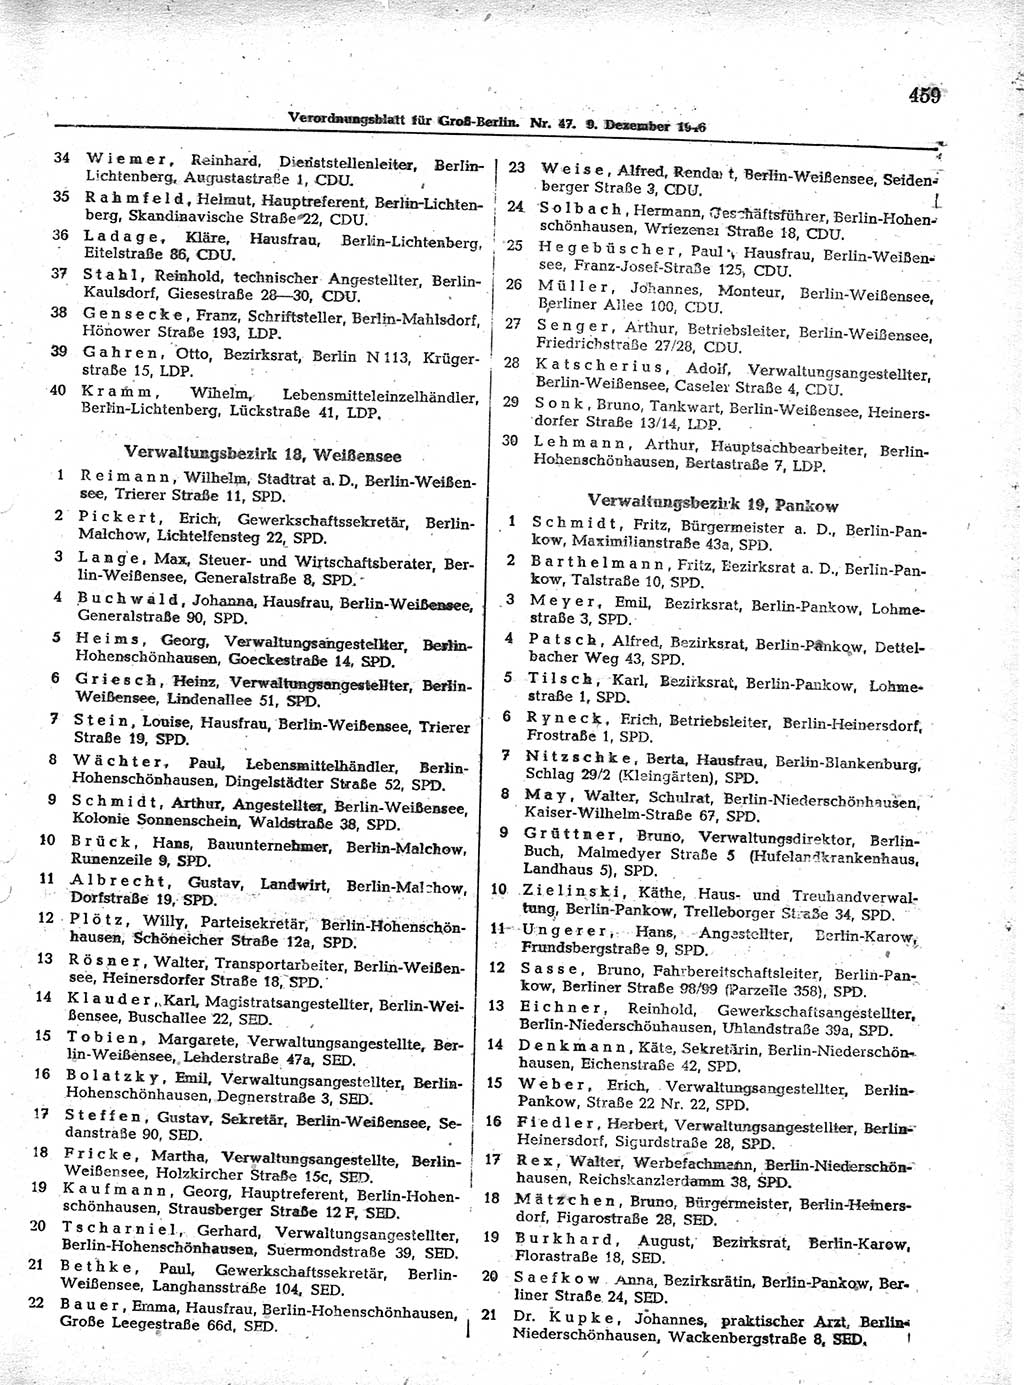 Verordnungsblatt (VOBl.) der Stadt Berlin, für Groß-Berlin 1946, Seite 459 (VOBl. Bln. 1946, S. 459)